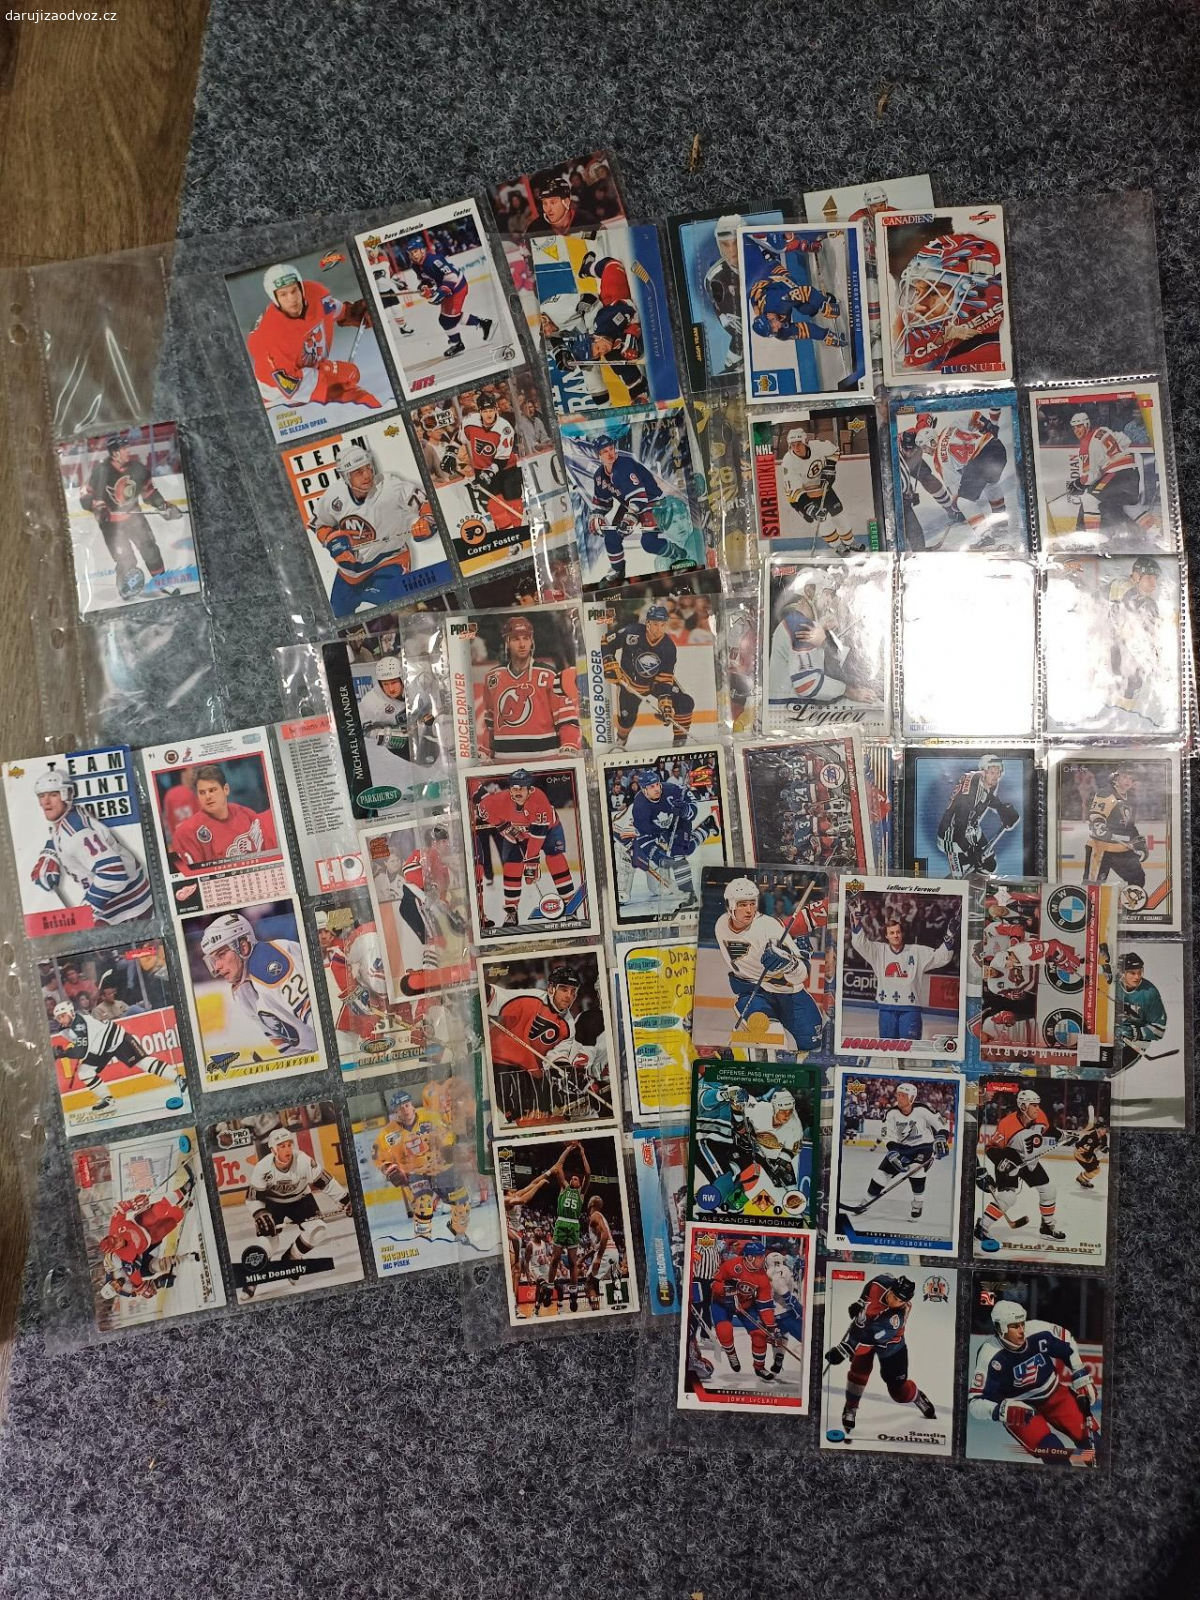 Daruji pár hokejových karet. Pár hokejových karet z nějaké starší sbírky.